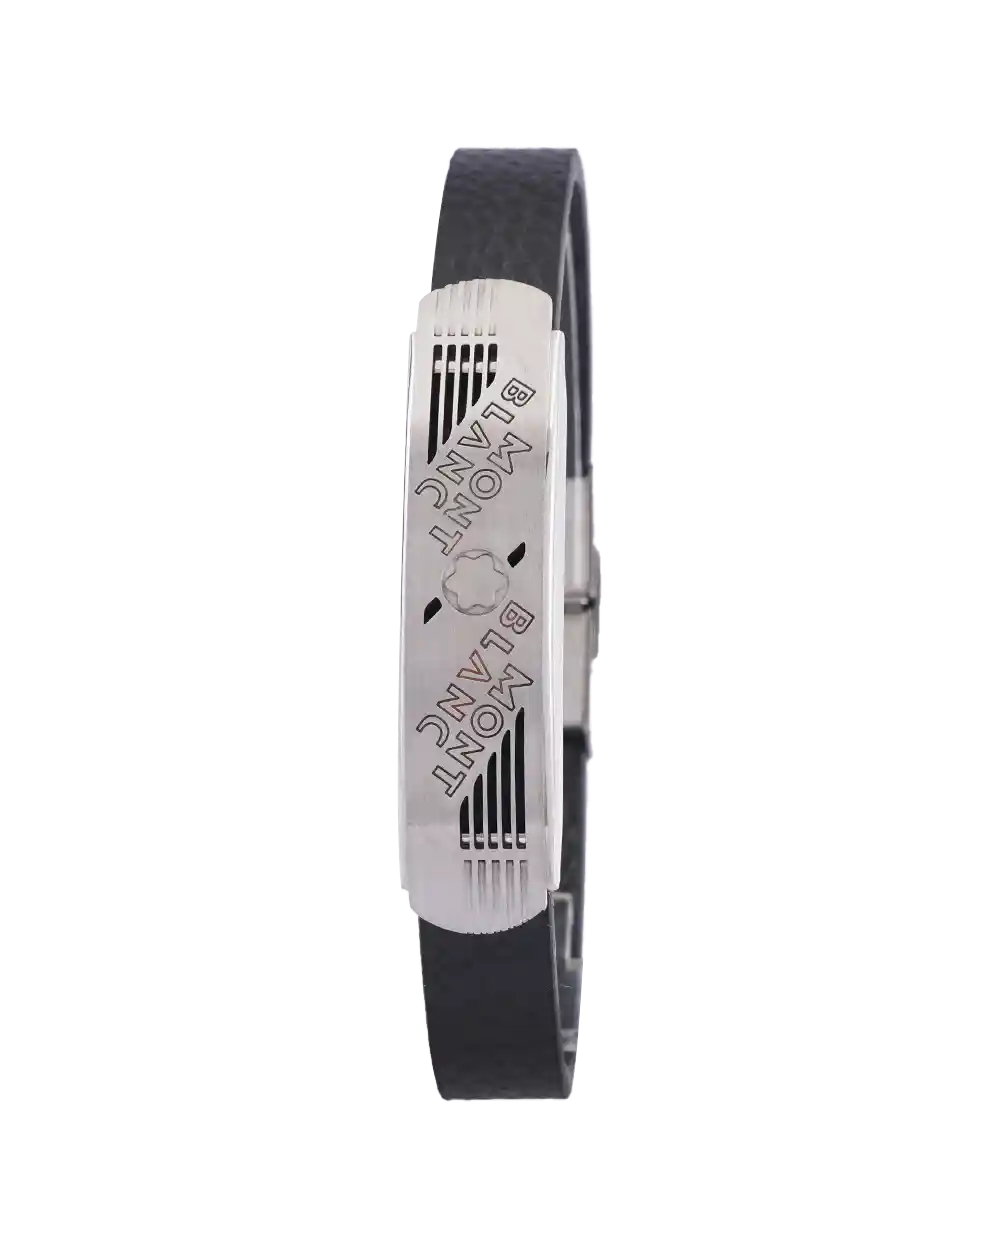 خرید دستبند دستبند چرمی مردانه طرح مونت بلانک مدل 1615 با بهترین قیمت به همراه جعبه کادویی و ارسال رایگان | دستبند چرمی مردانه mont blanc